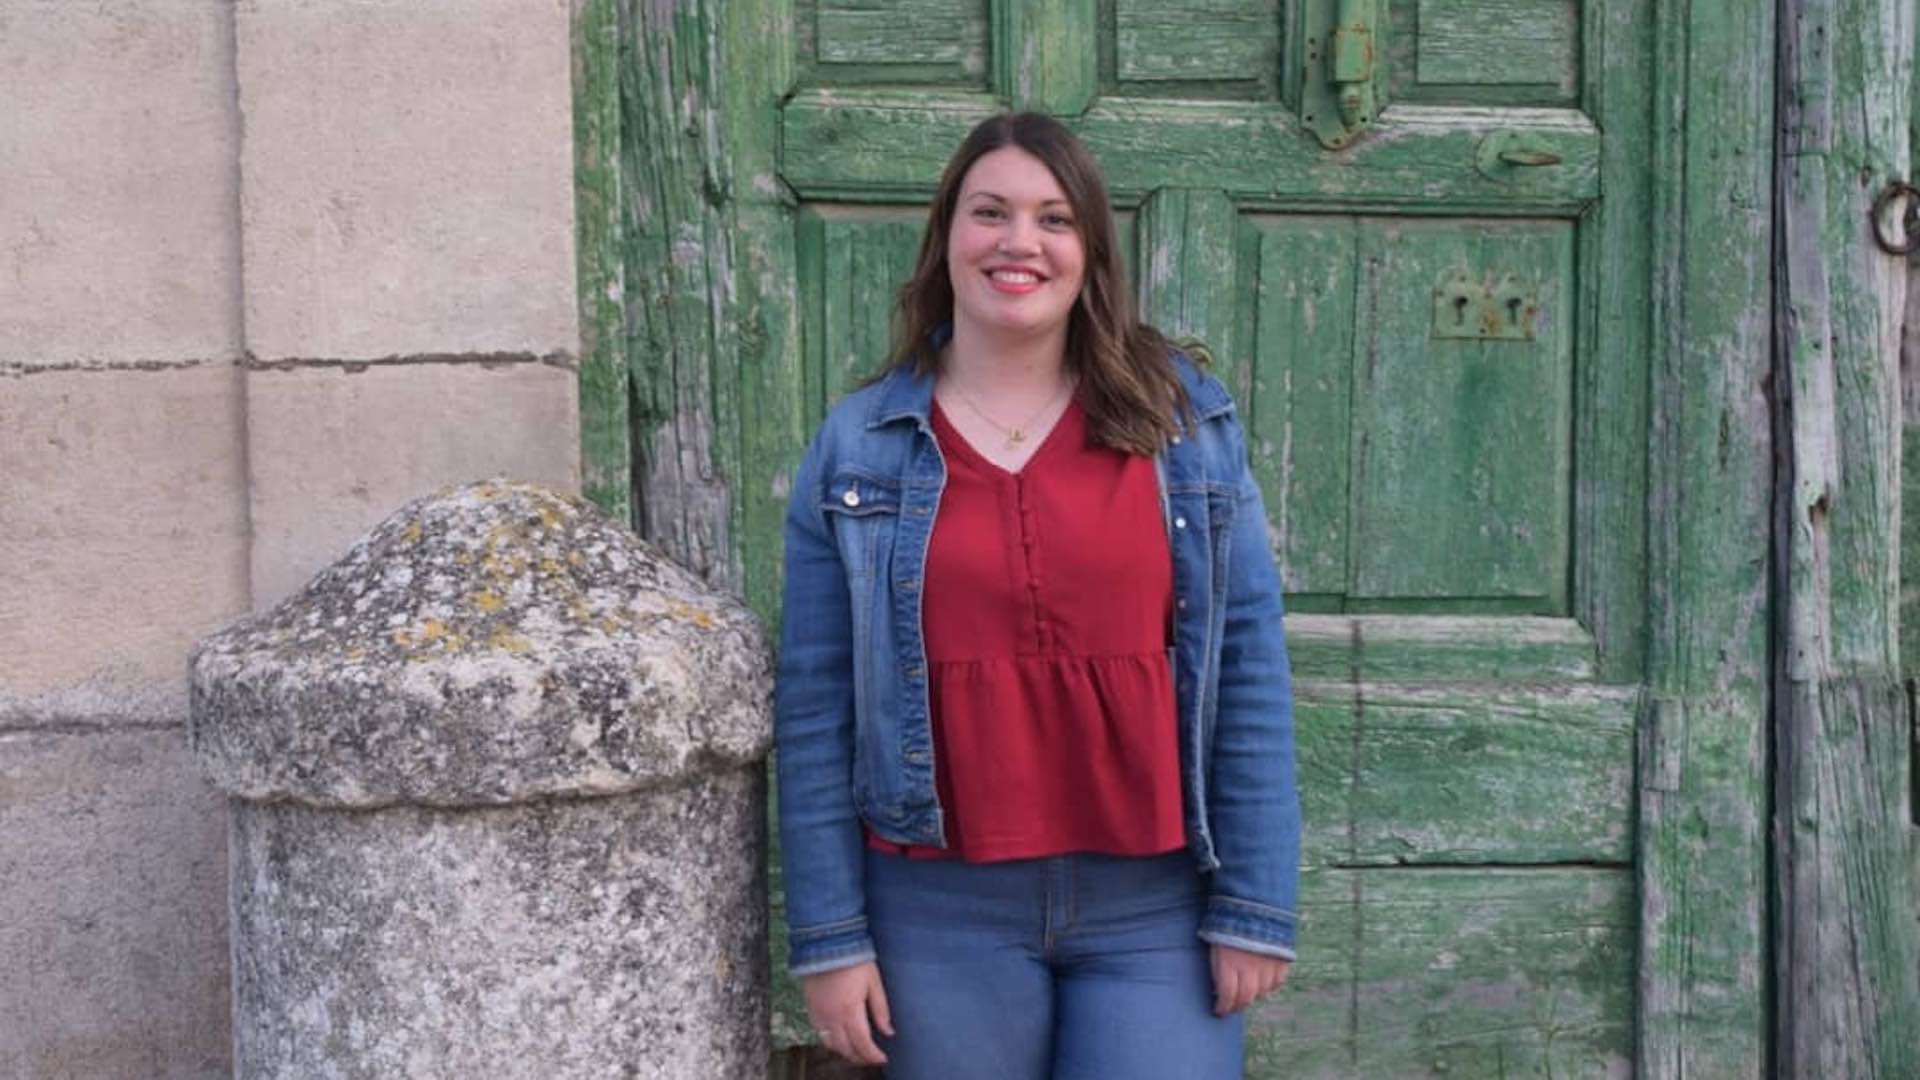 María Arribas, la alcaldesa más joven de España: "Llega un ama de casa a un pueblo con déficit y lo apaña"